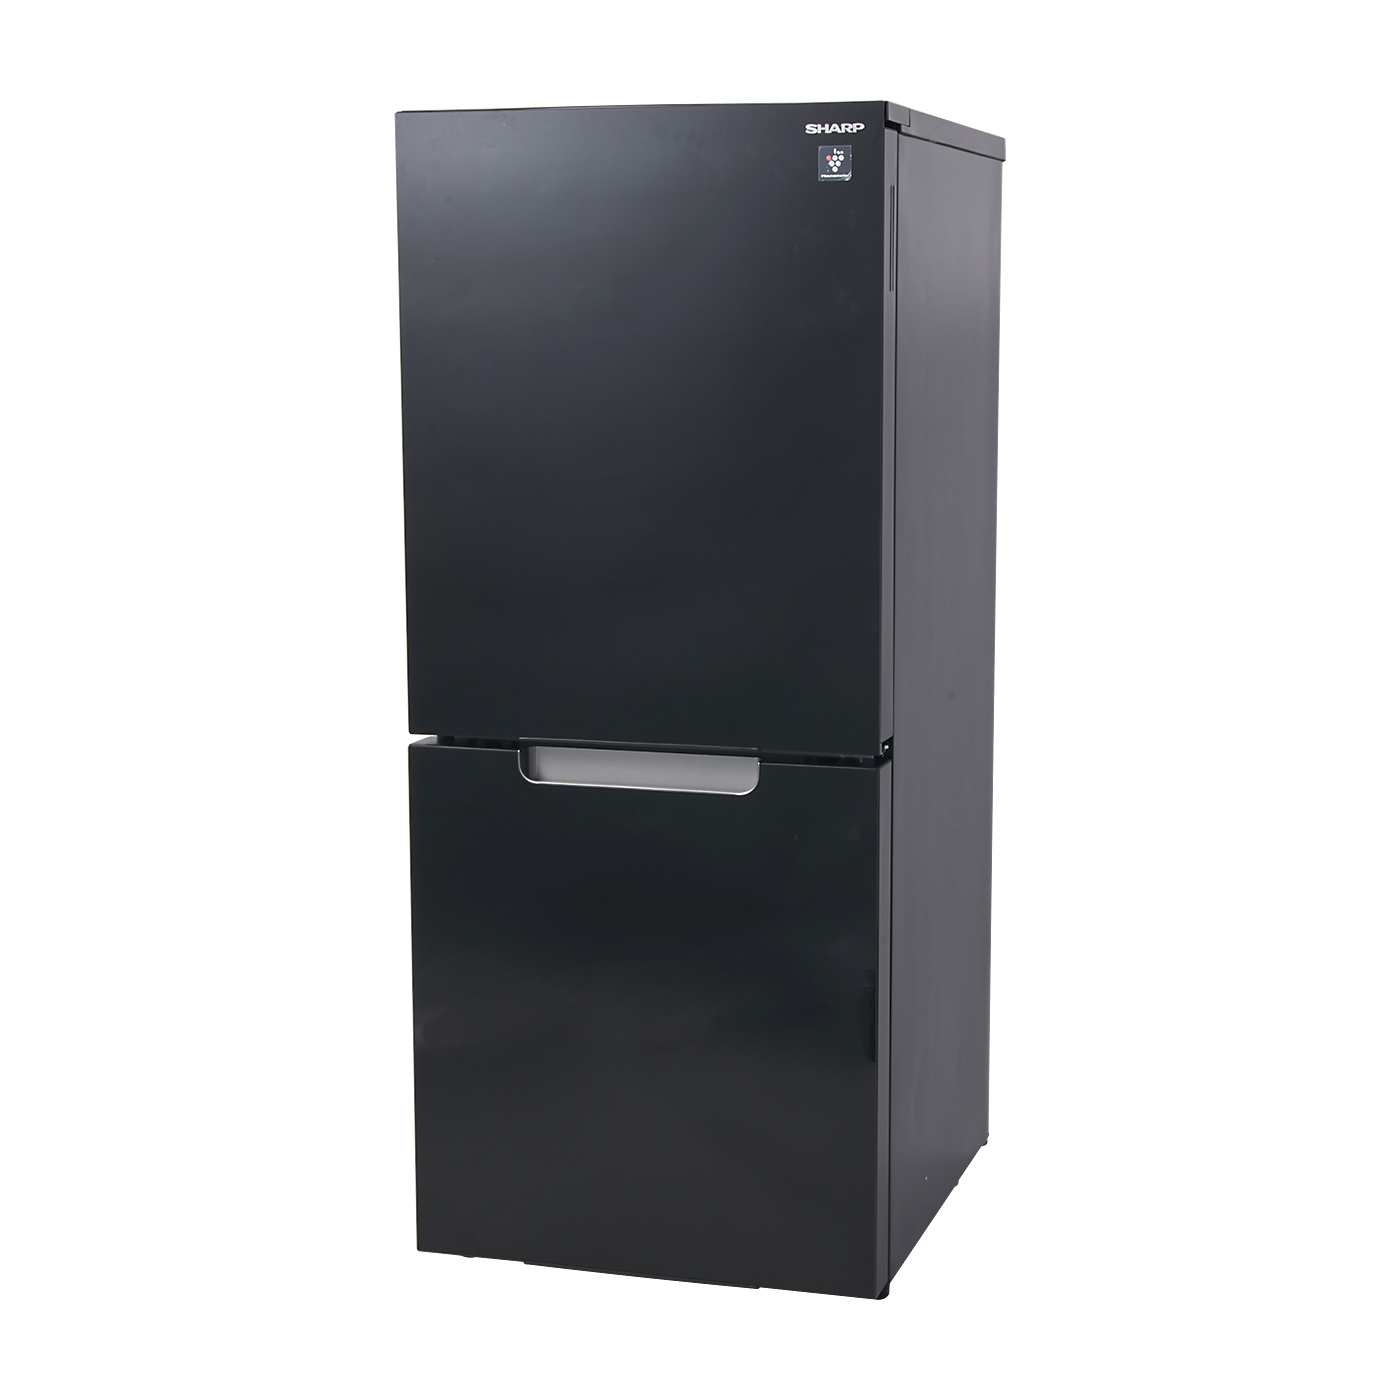 ヤマダ電機冷凍冷蔵庫117L強化ガラス棚省エネ設計 19年製 - 冷蔵庫